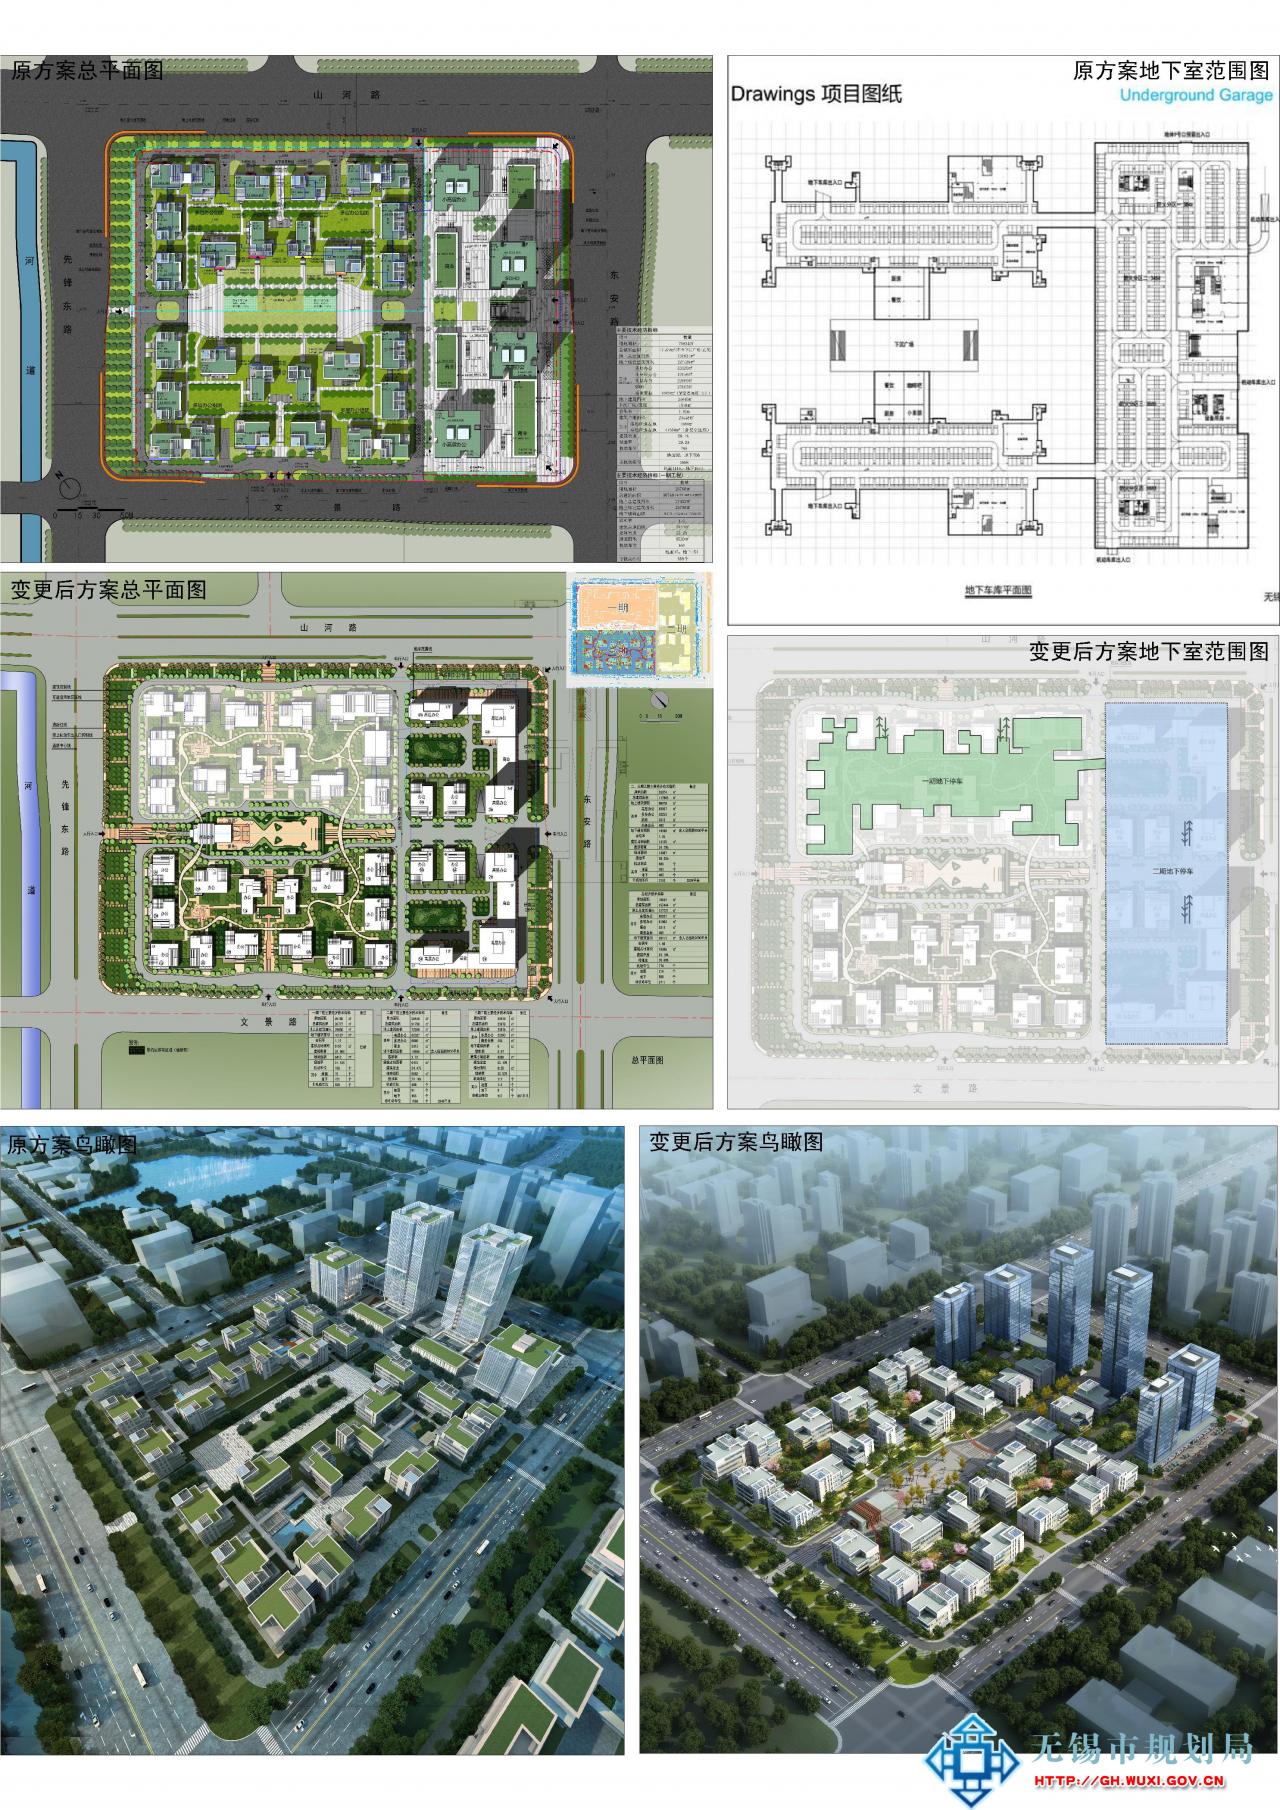 无锡浙大网新国际科技创新园有限公司XDG-2012-103号地块开发项目二、三期工程规划设计方案变更批前公示